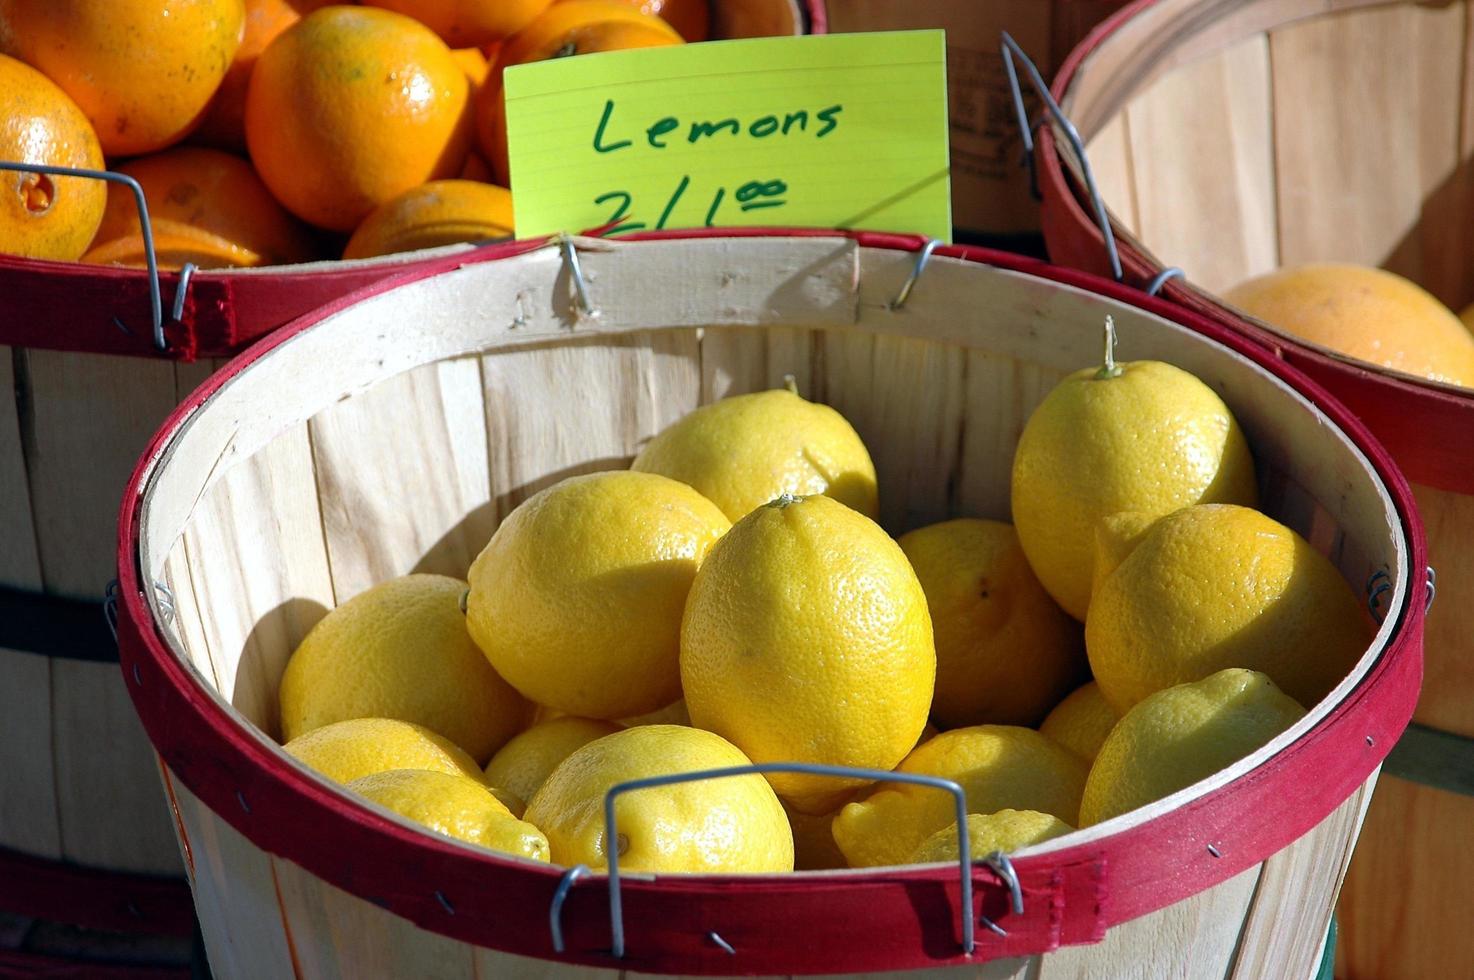 citroner till salu foto